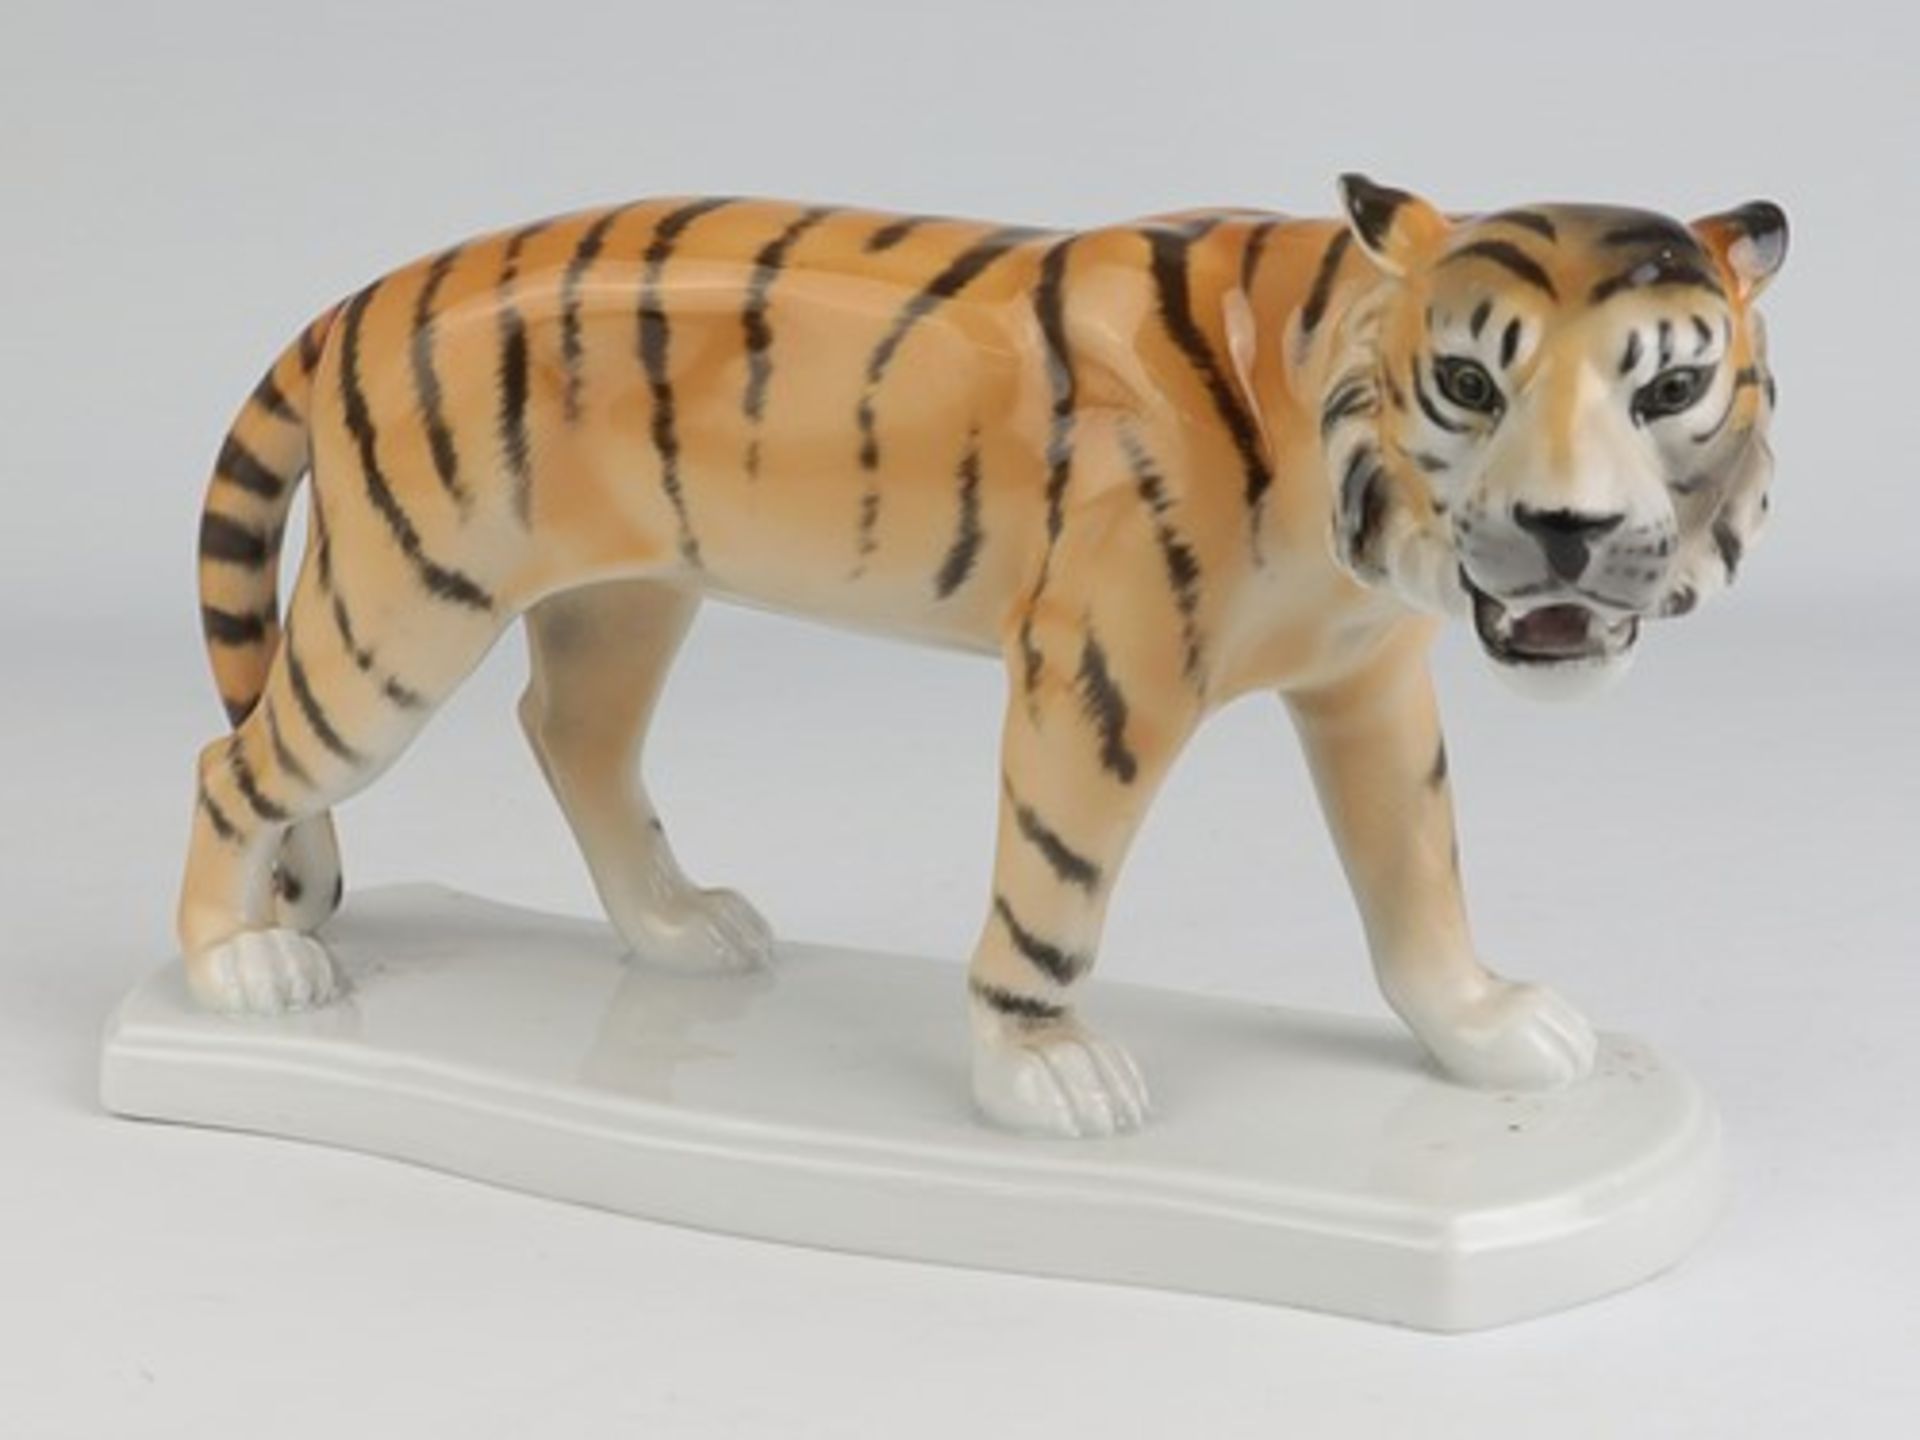 Fasold & Stauch - Figurgrüne Marke, Modellnr. 16328, geschwungener Stand, stehender Tiger, min.